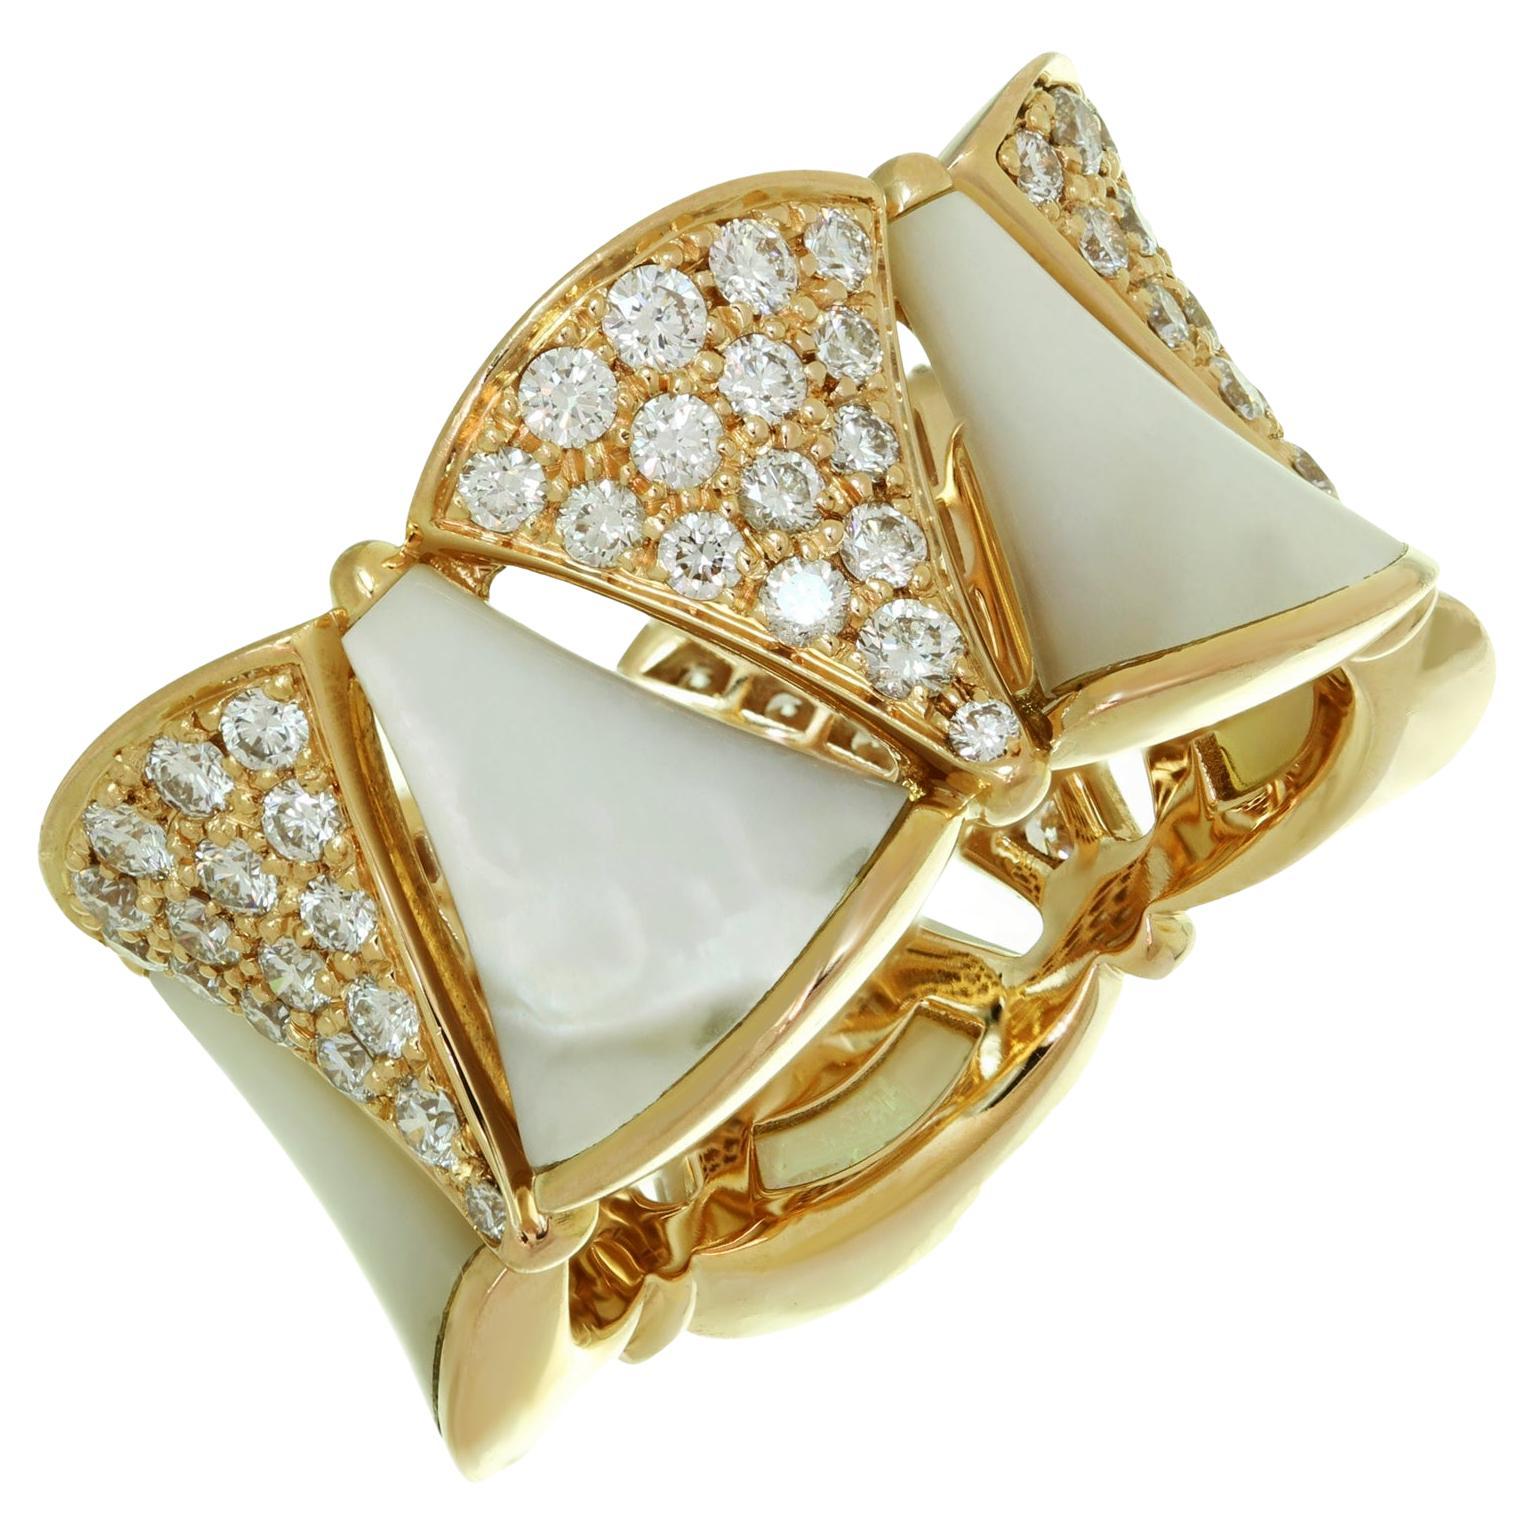 Bvlgari Bague Divas Dream en or rose 18 carats avec diamants et nacre